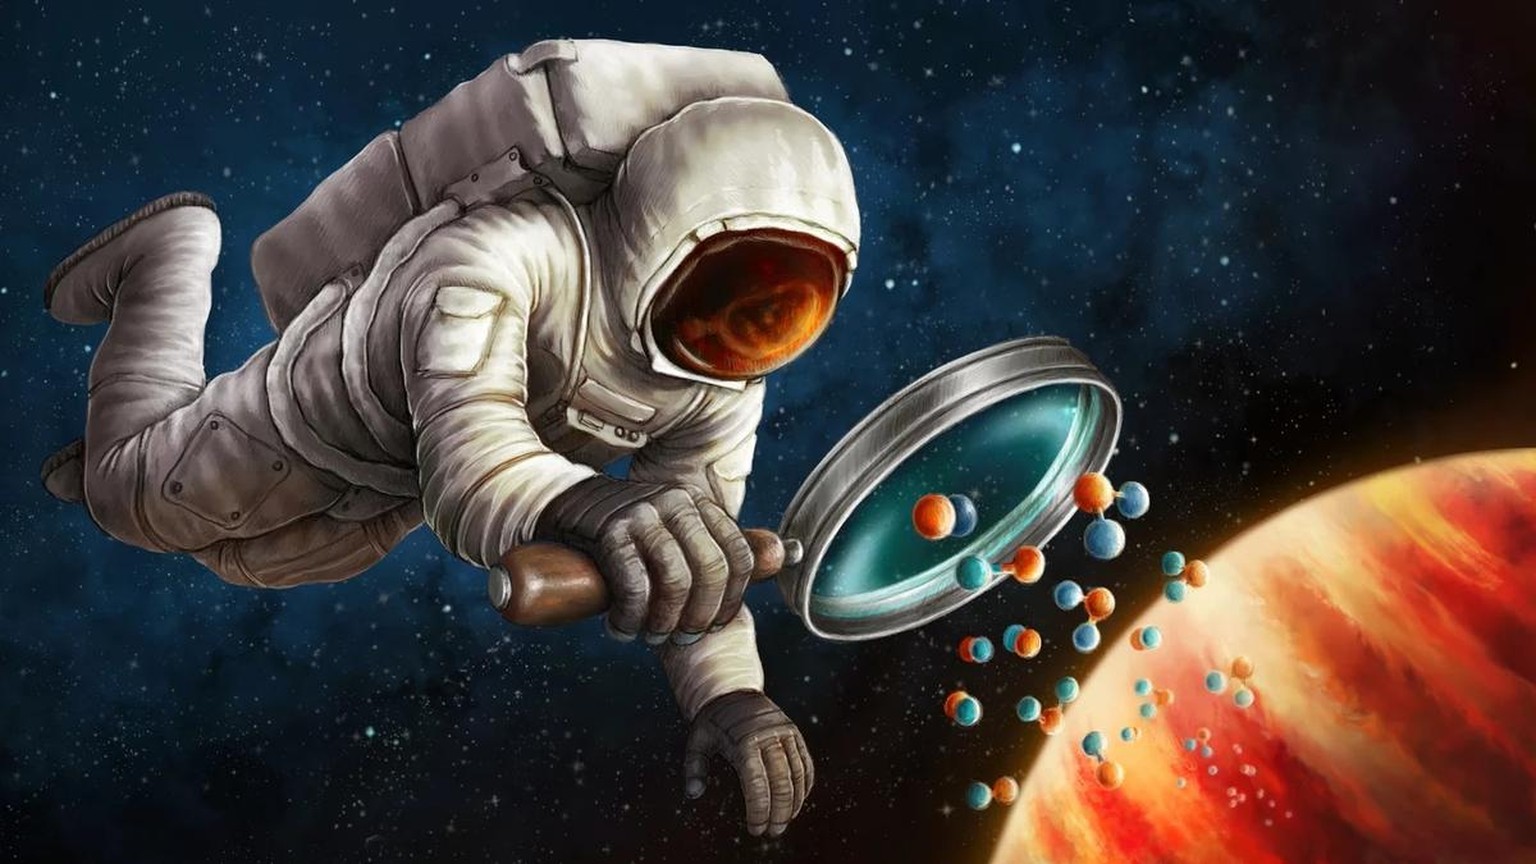 Illustration: Astronaut untersucht Atome über einem Exoplaneten
https://artsource.nl/